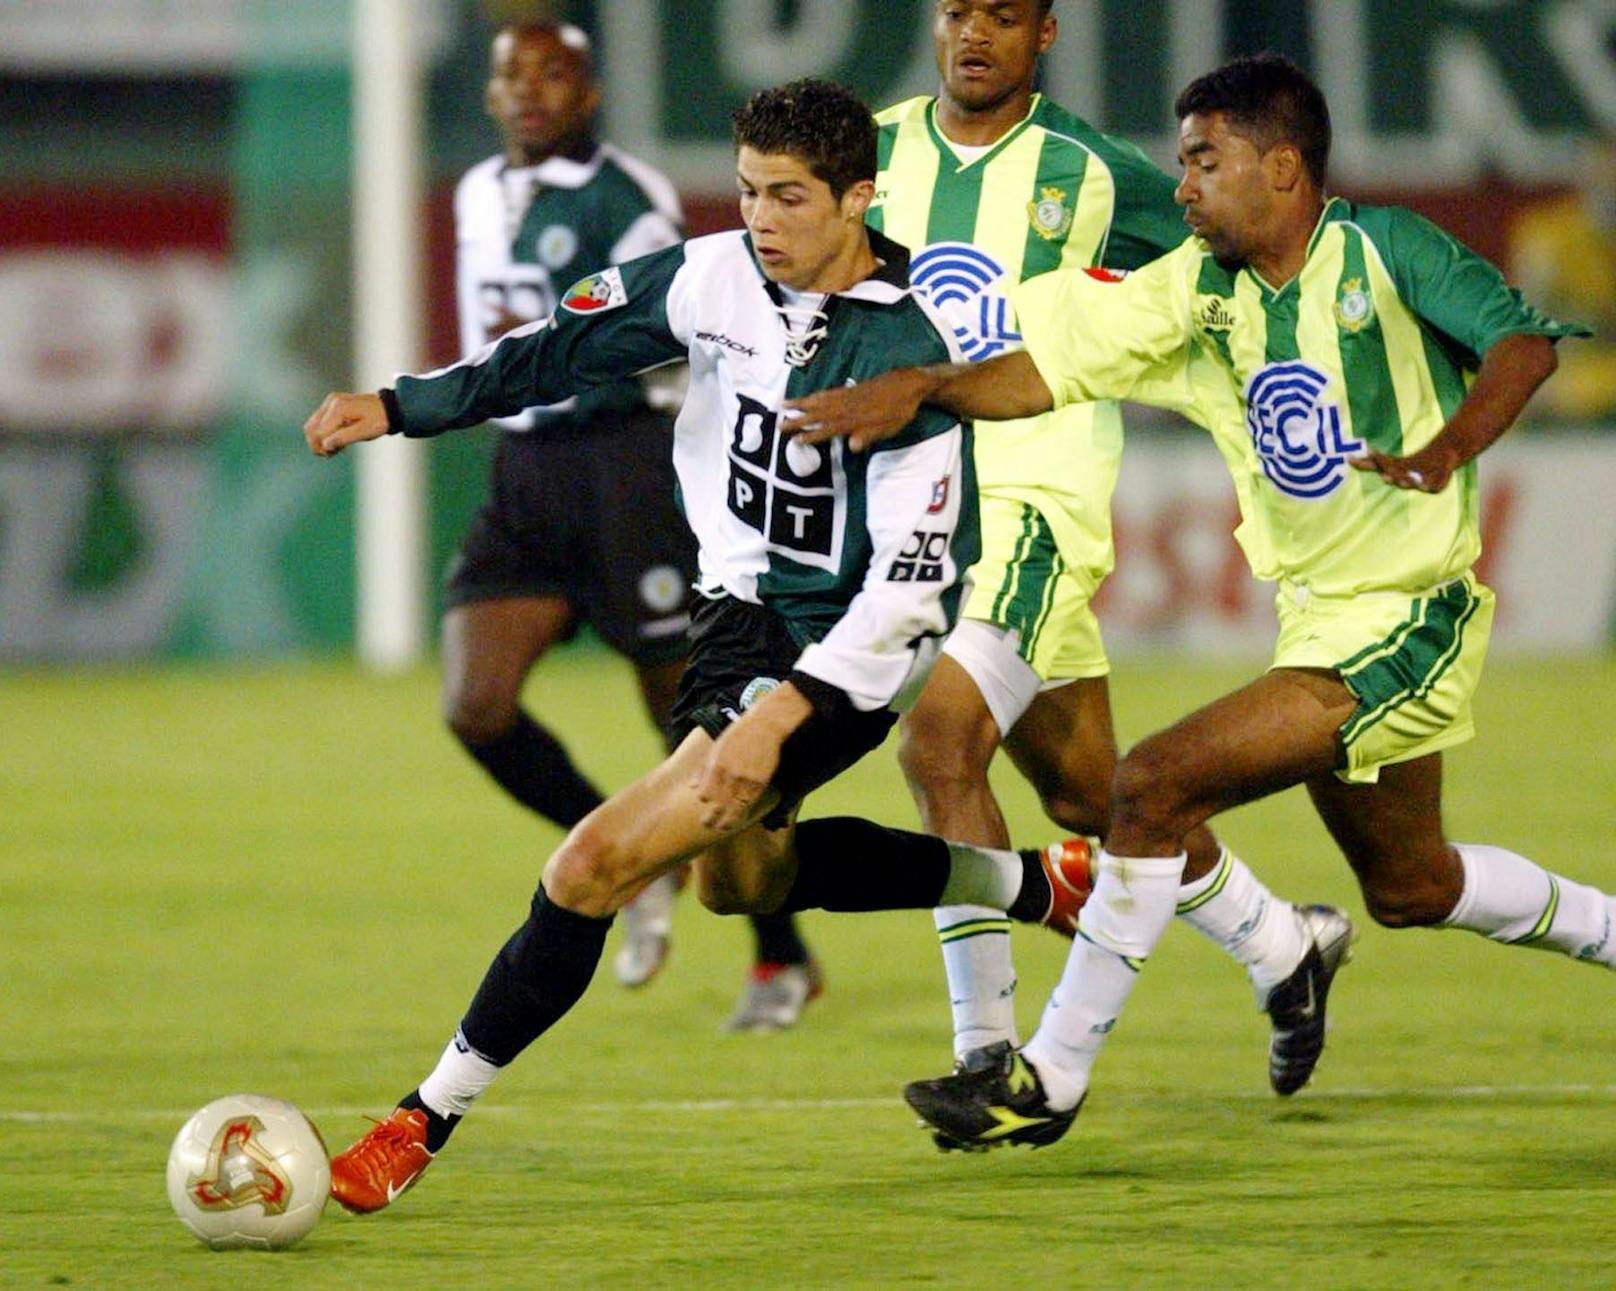 Der Stern von Cristiano Ronaldo ging in der Jugend von Sporting Lissabon auf, bis 2003 kickte er in Grün-Weiß.